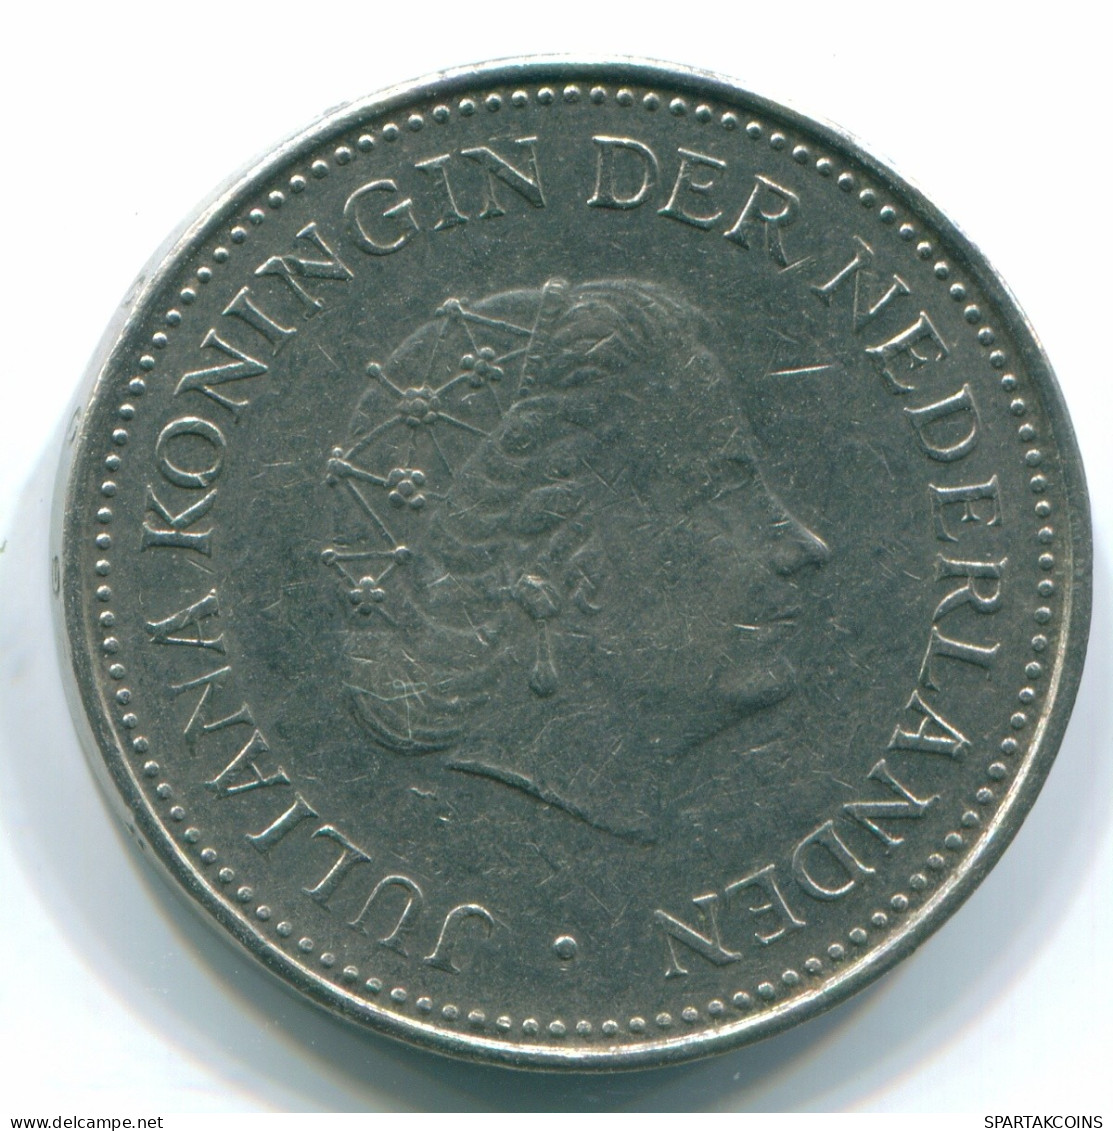 1 GULDEN 1971 ANTILLAS NEERLANDESAS Nickel Colonial Moneda #S12006.E.A - Netherlands Antilles